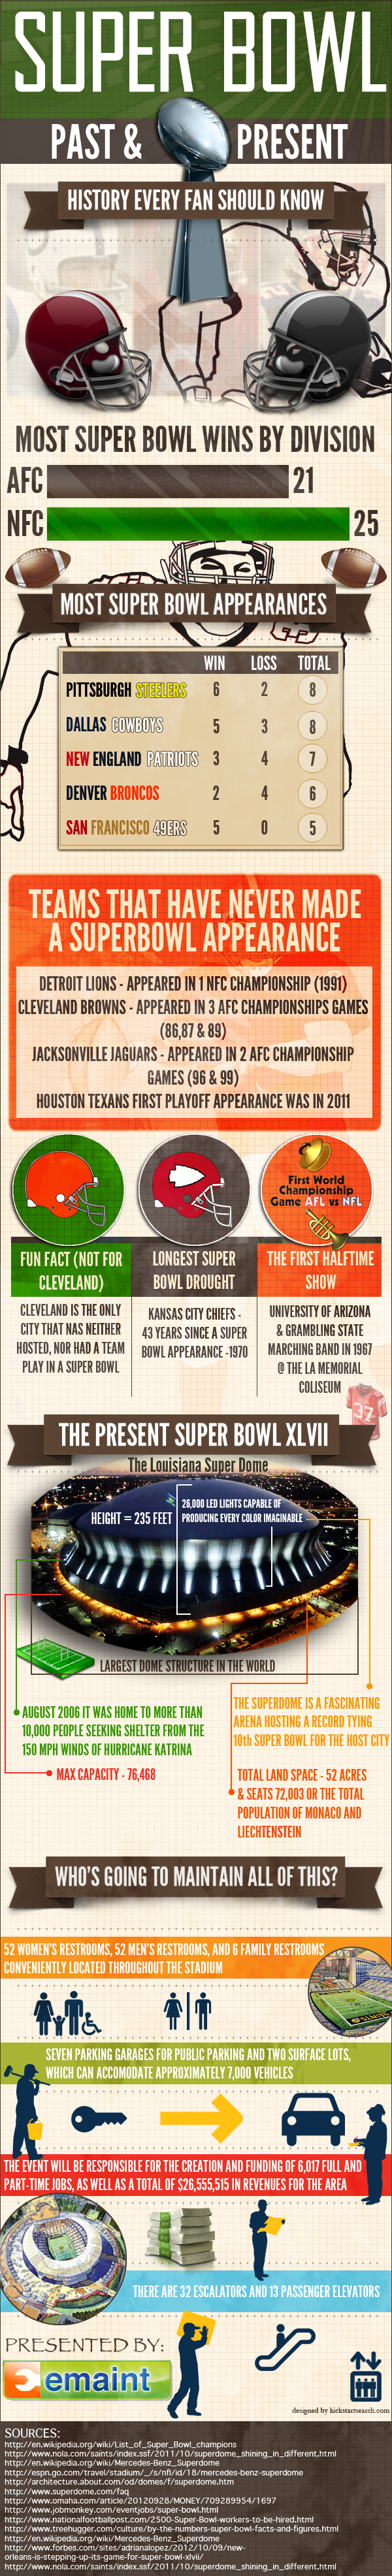 Super Bowl Past & Present